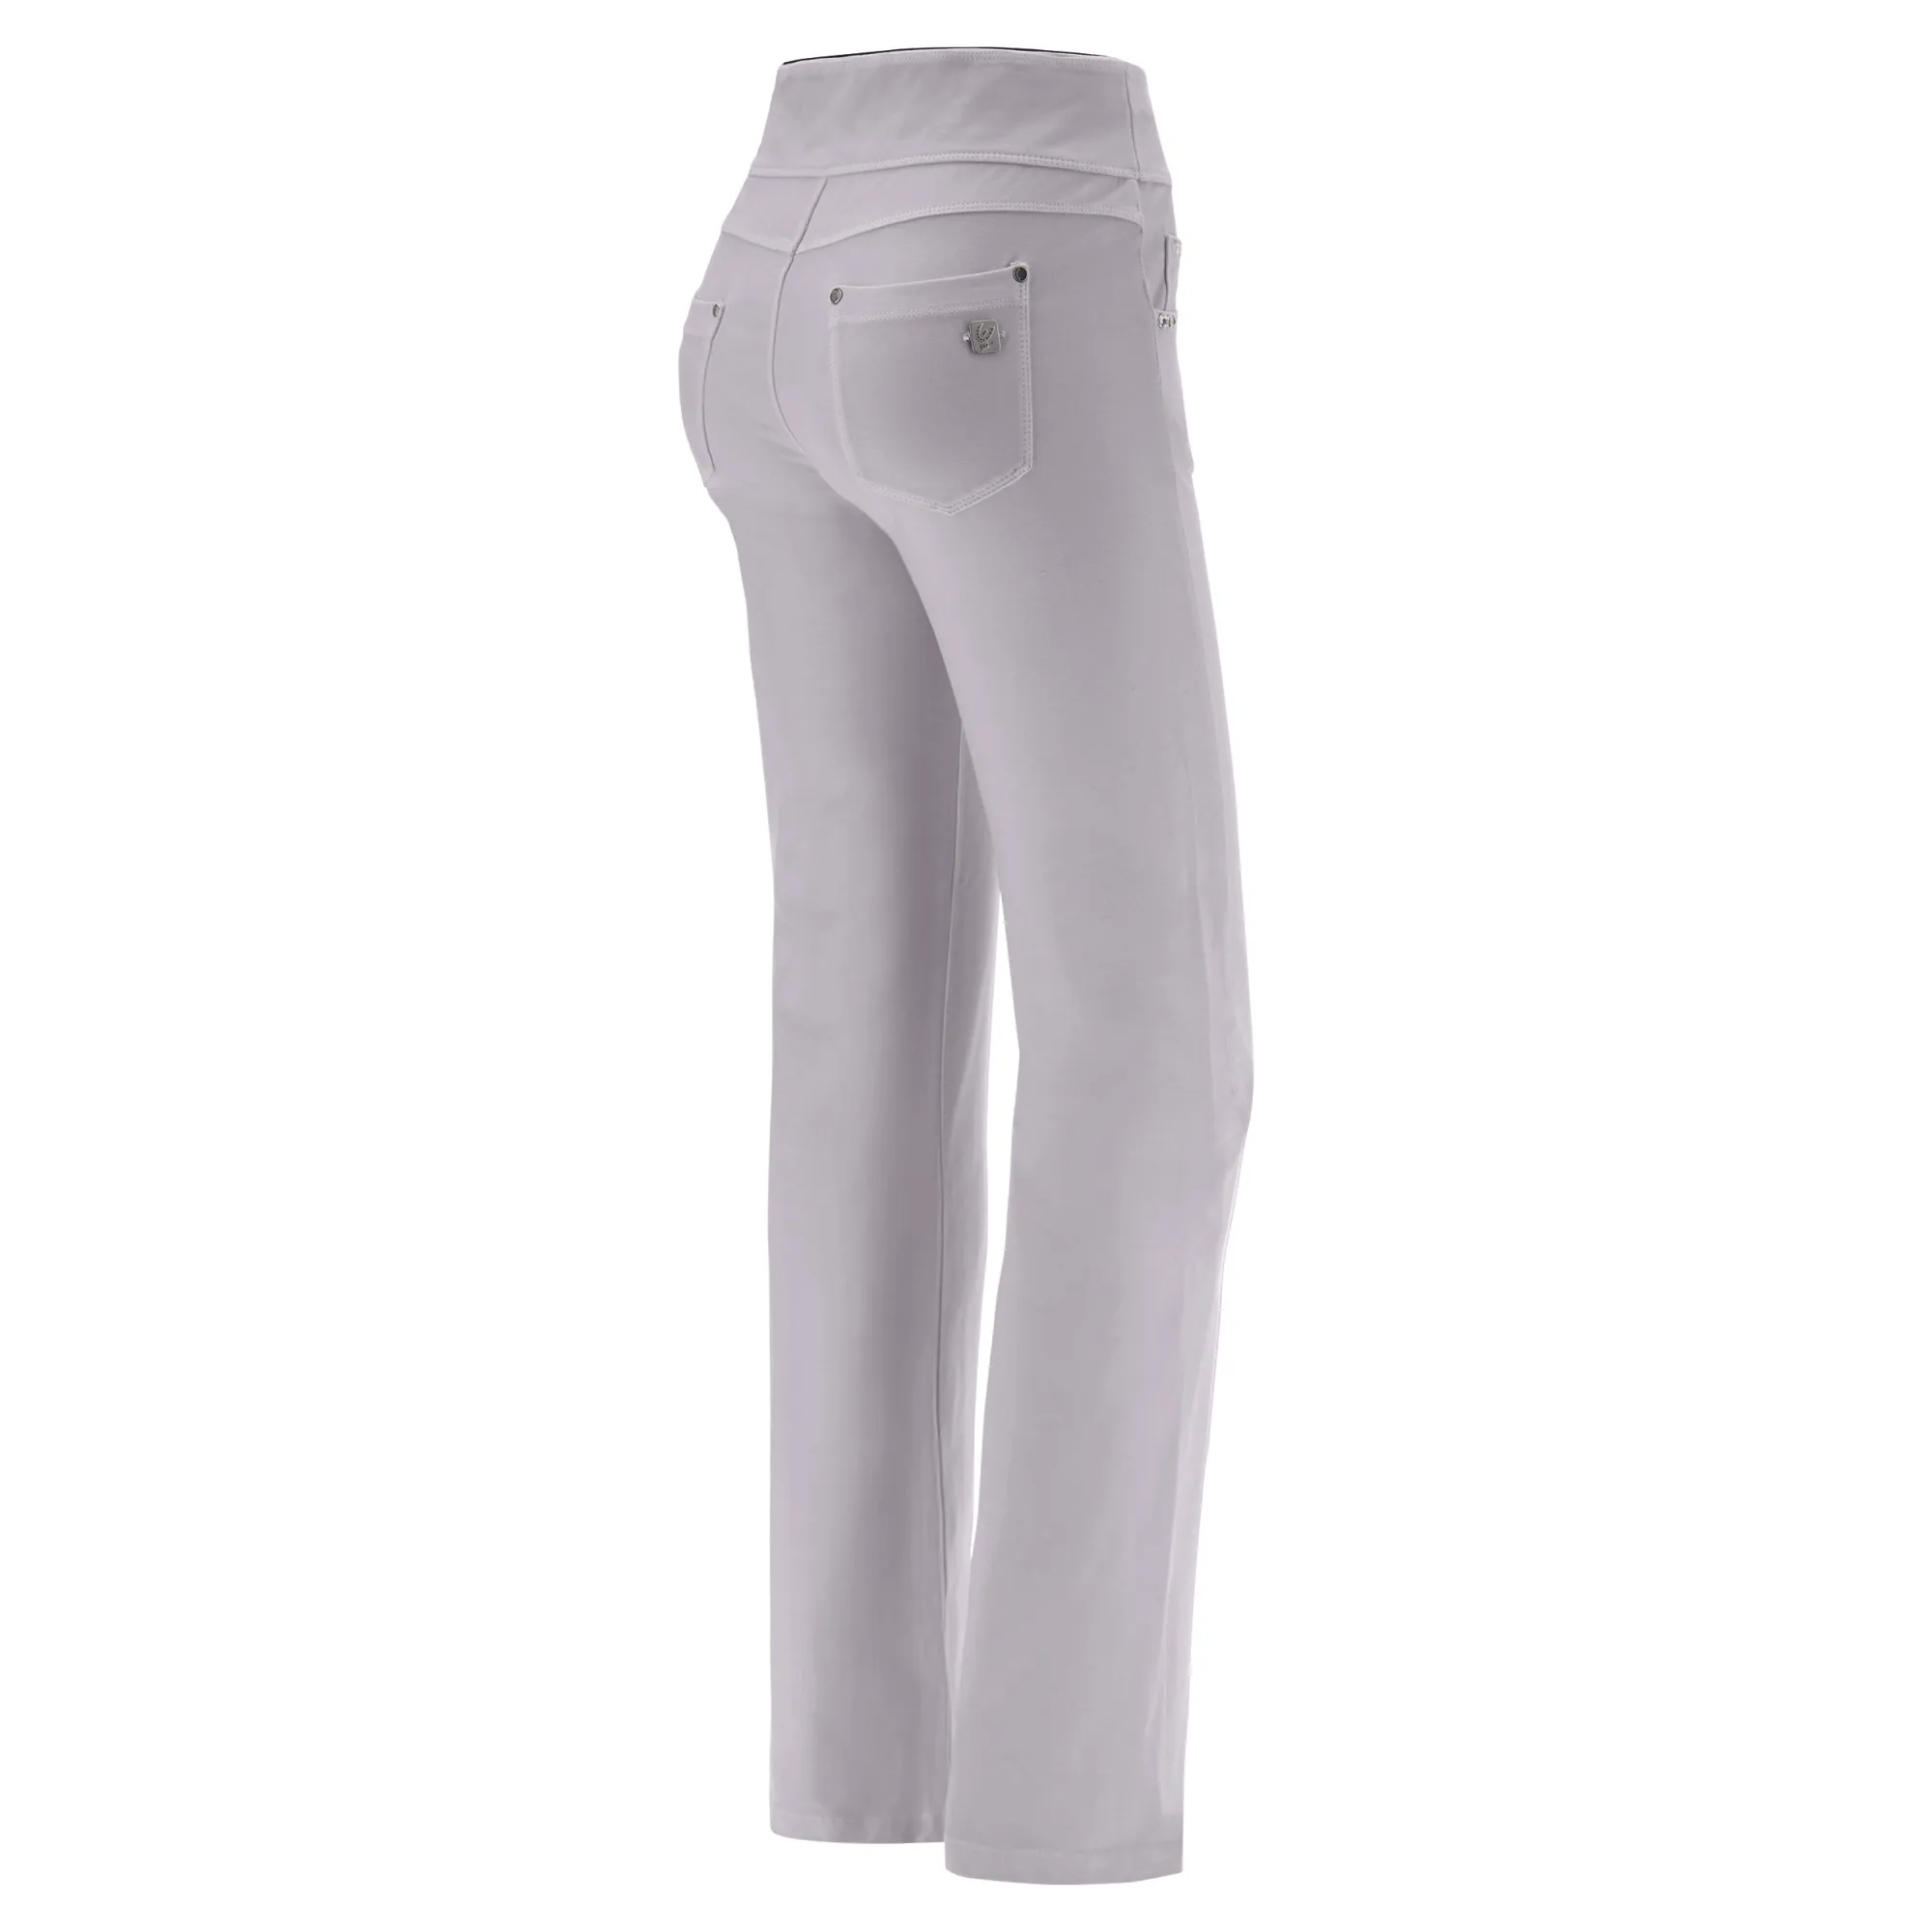 Freddy N.O.W.® Yoga Damen Comfort Hose - Mid Waist Straight - umschlagbarer Taillenbund - Garment Dyed - Grau - G121